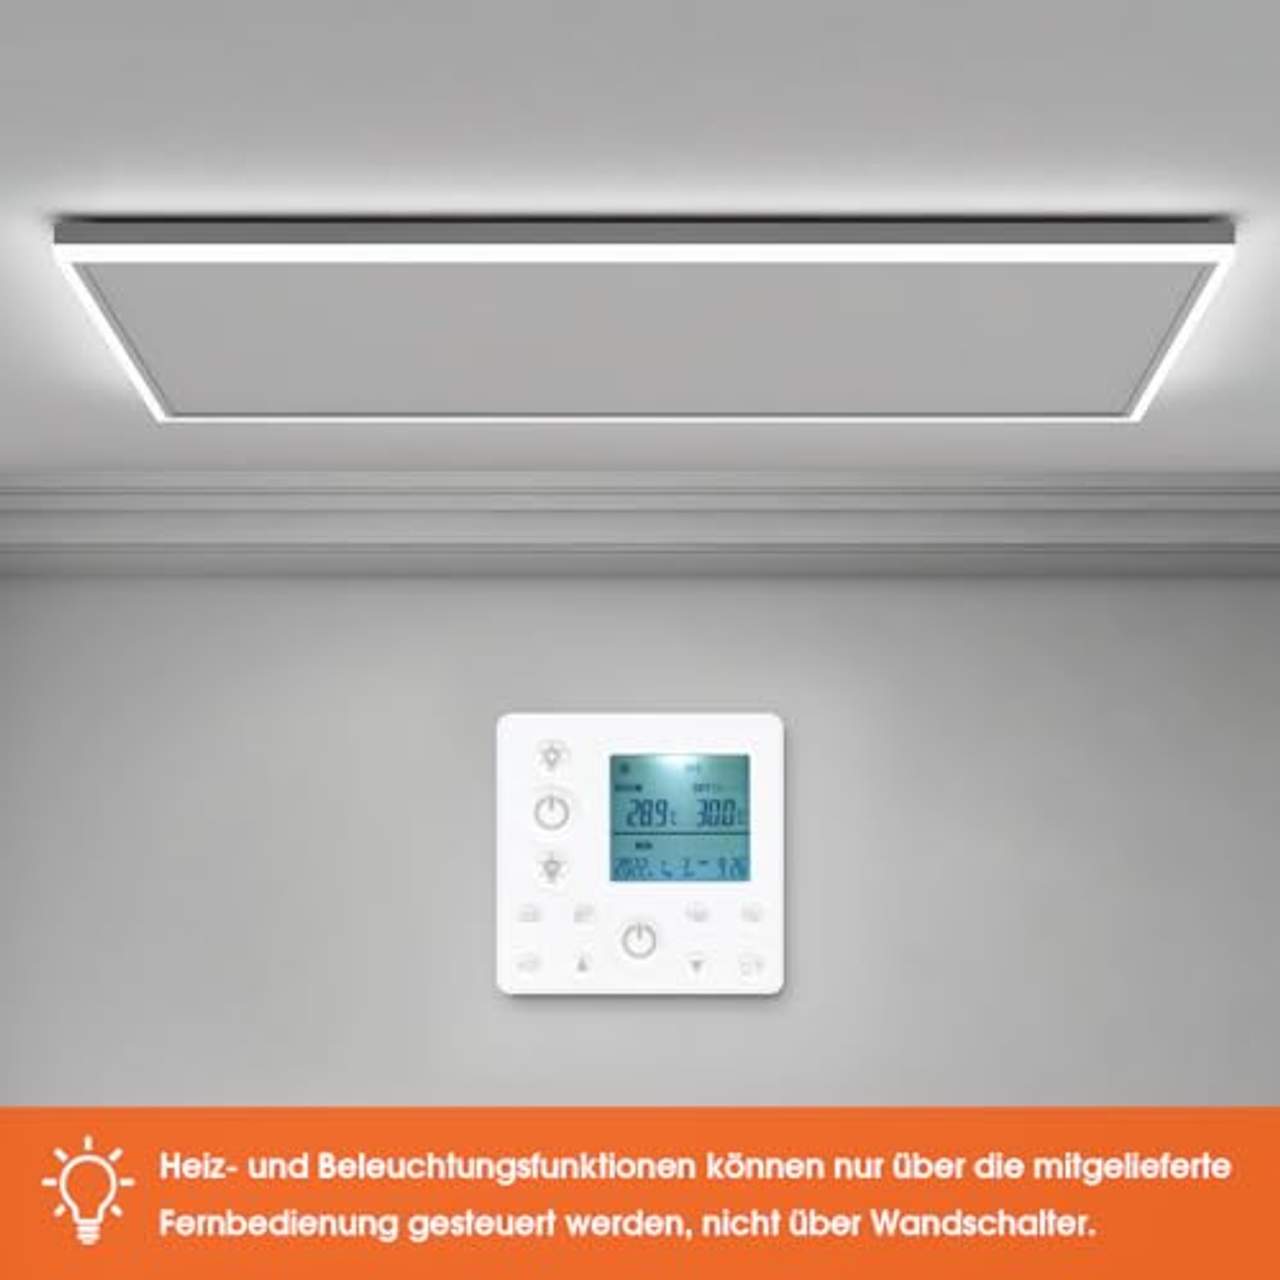 byecold Infrarotheizung mit Thermostat Deckenheizung 800W LED Beleuchtung Licht Kaltweiß